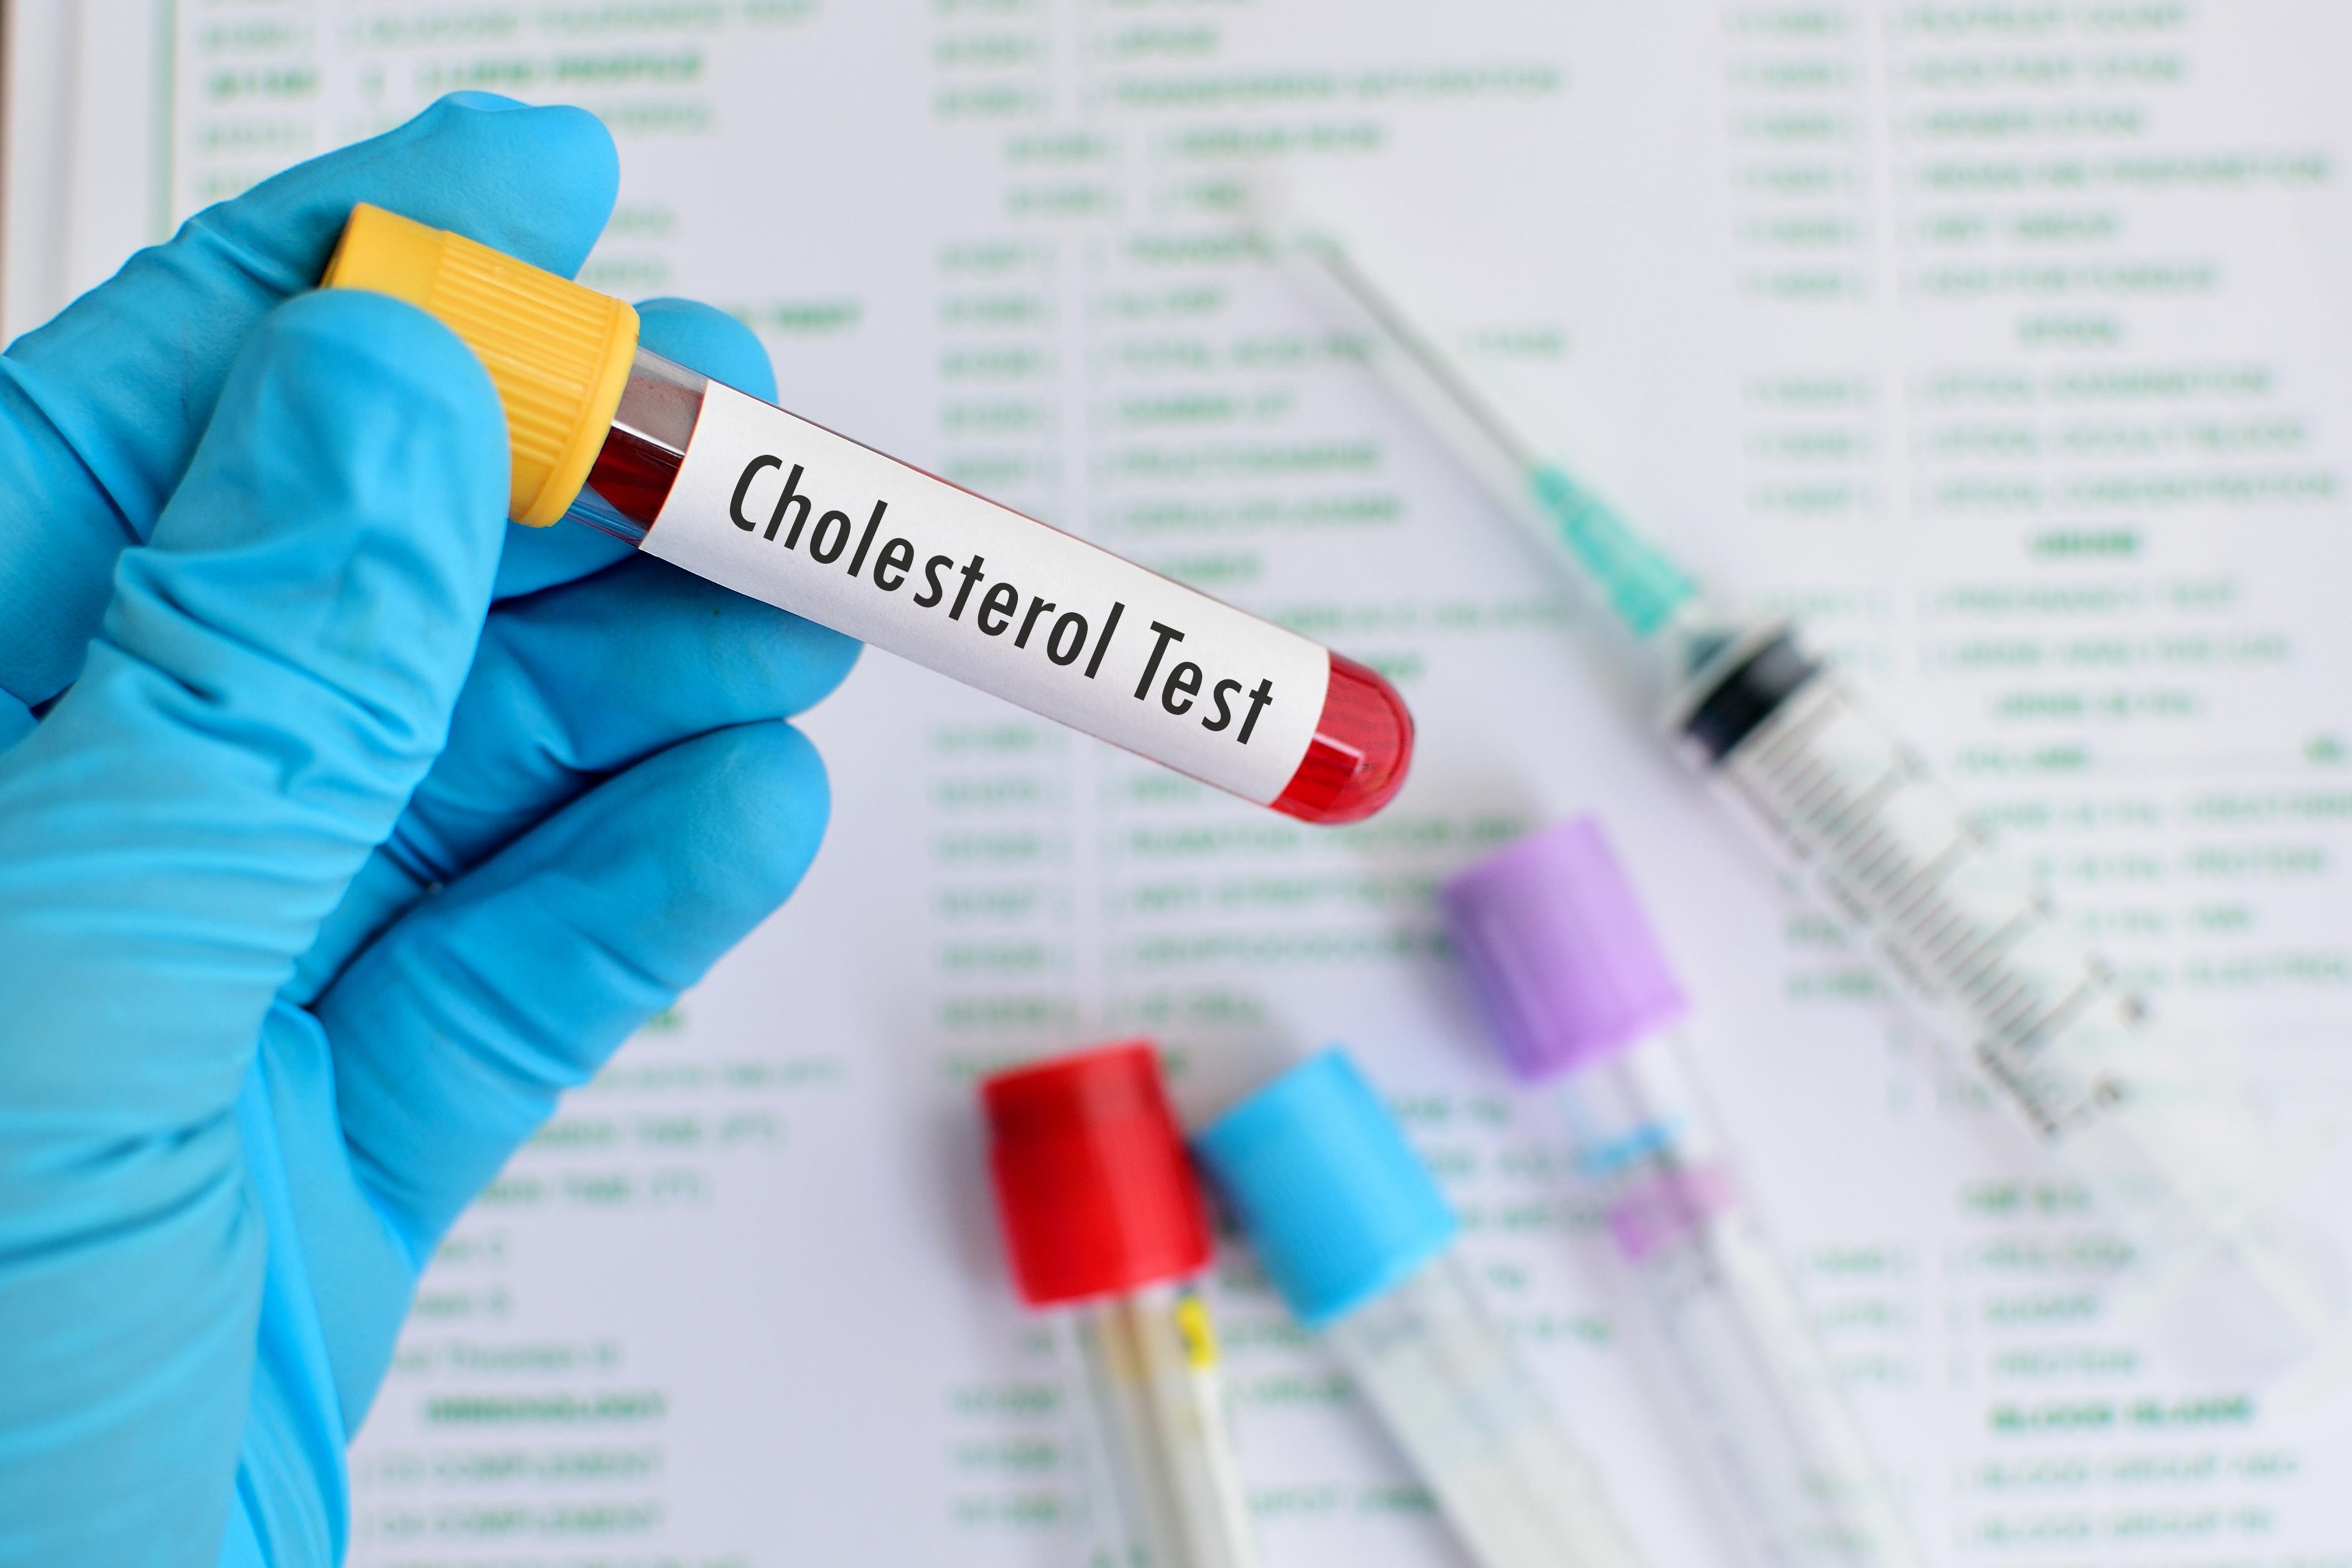 Le Cholestérol - Ce que vous pouvez faire pour abaisser votre taux.